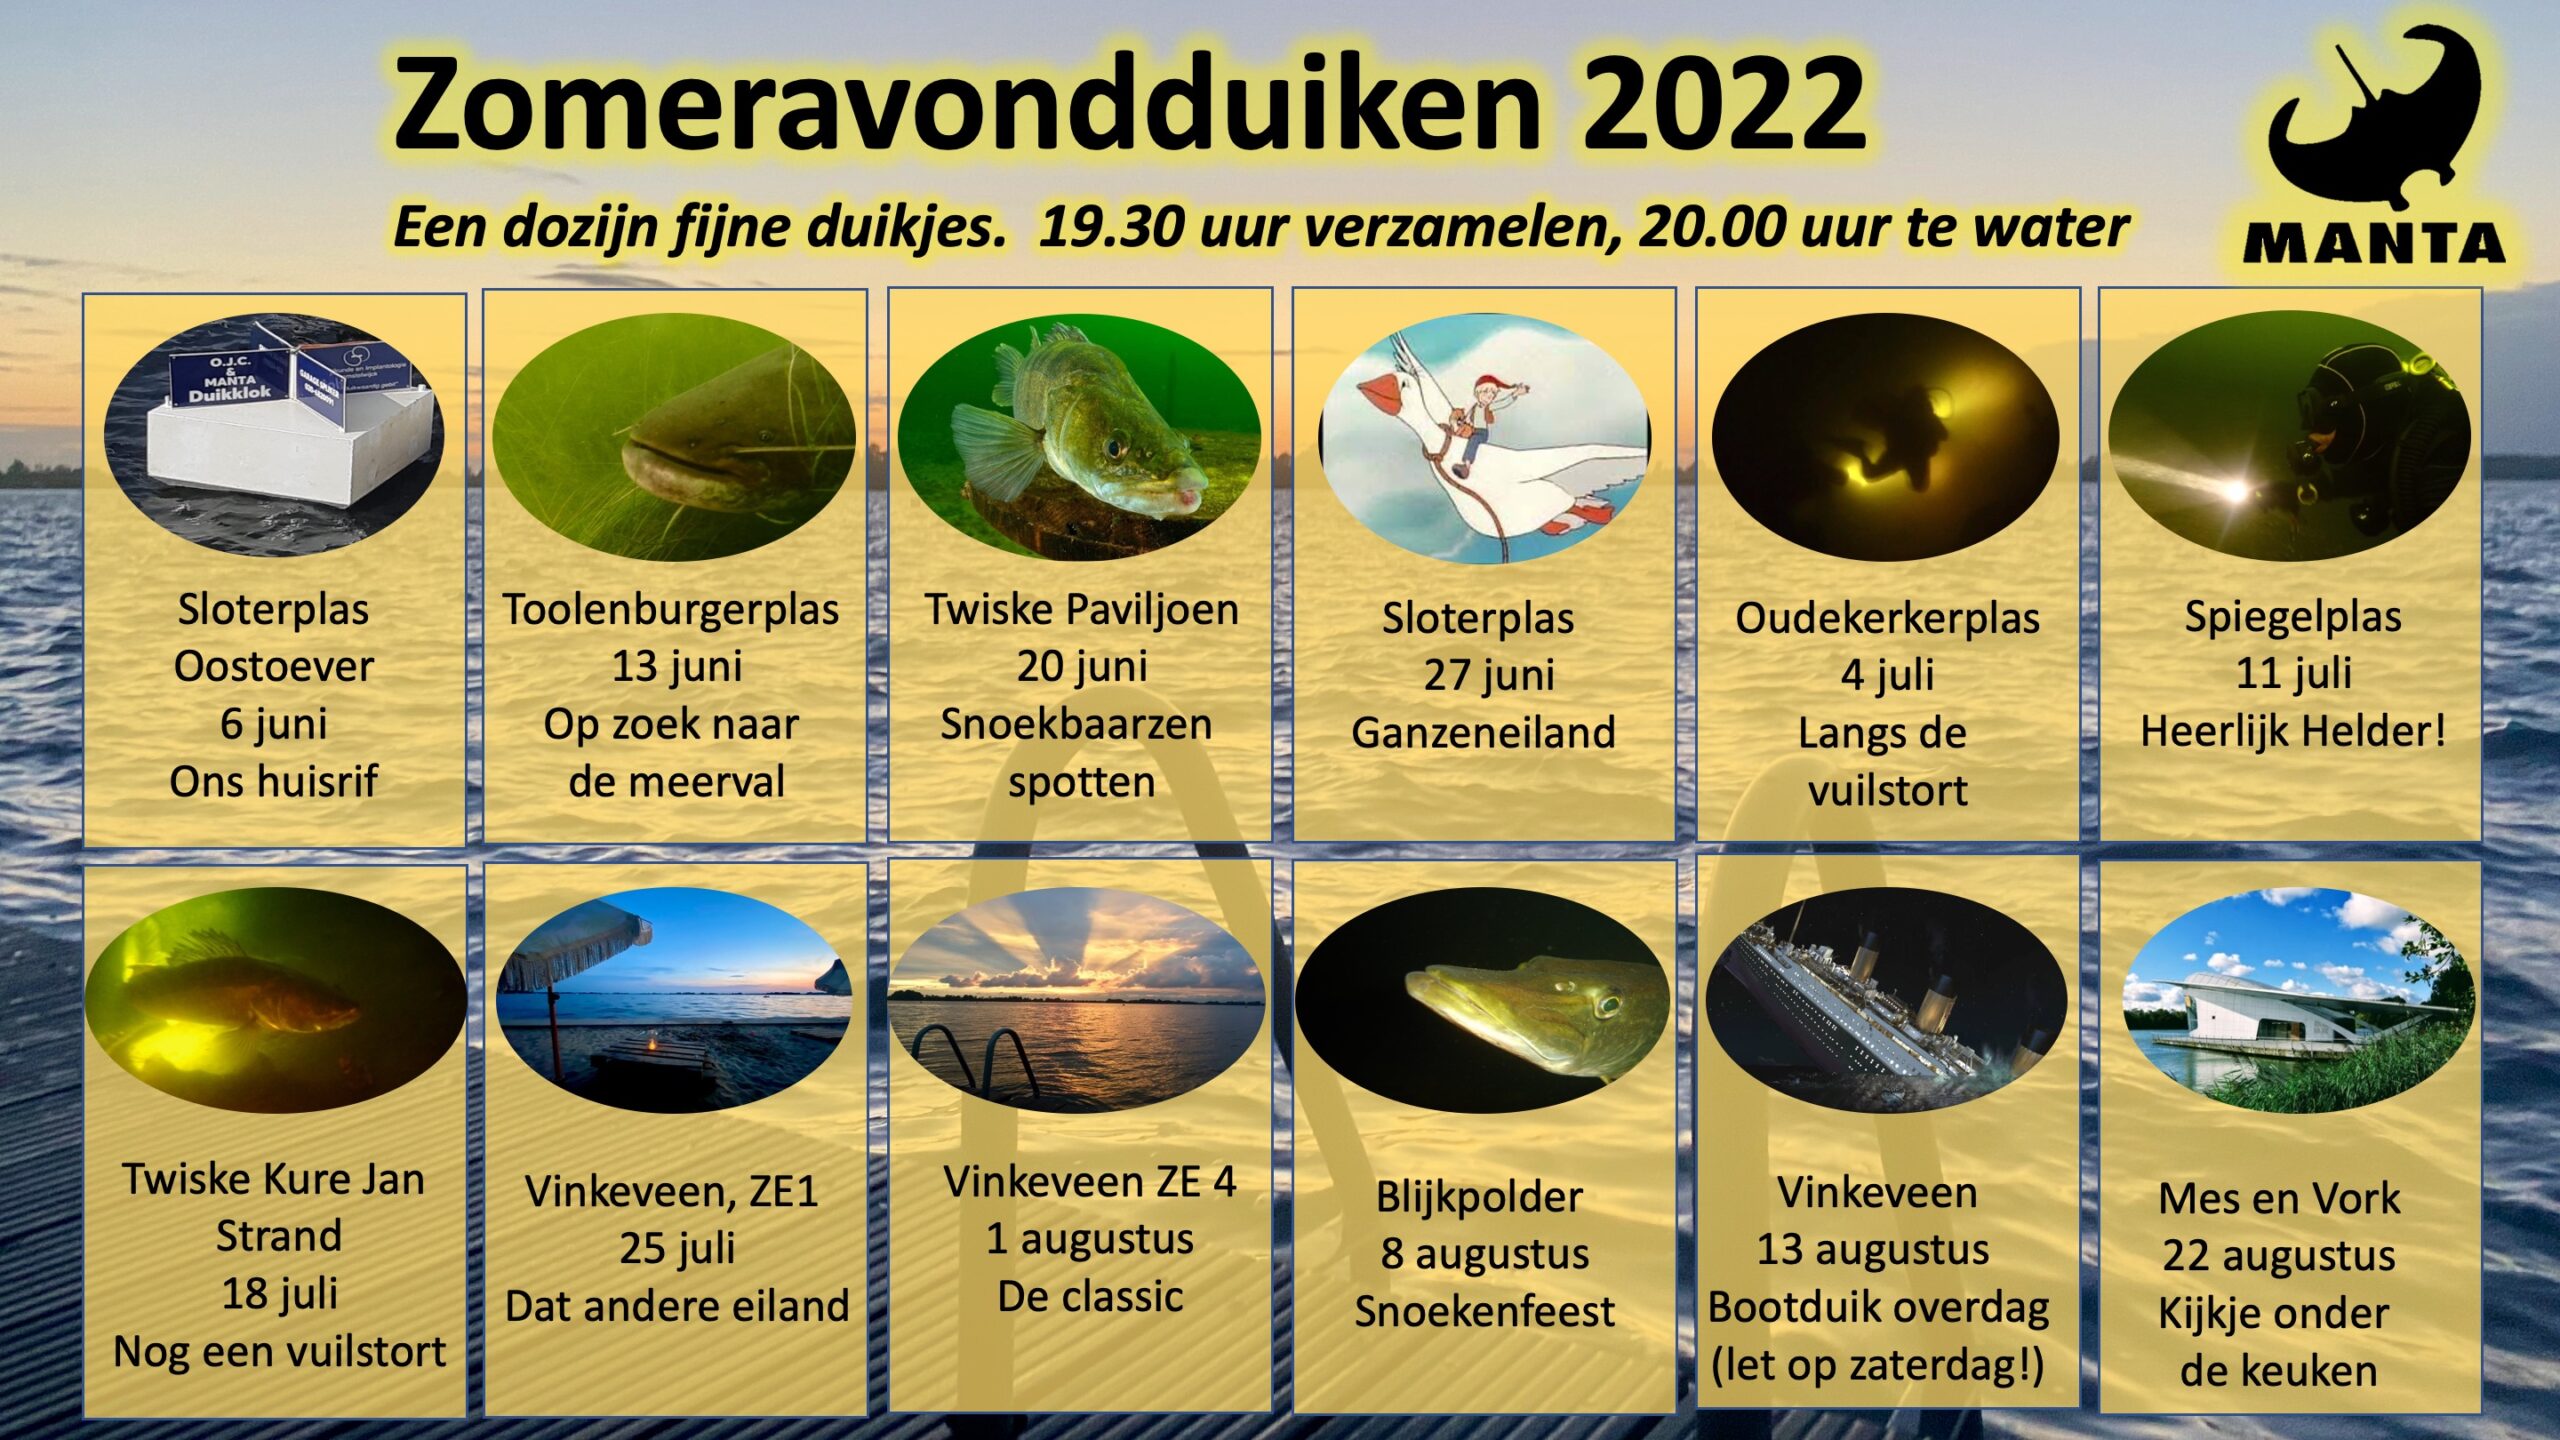 Zomeravondduiken 2022 - Sloterplas Ganzeneiland